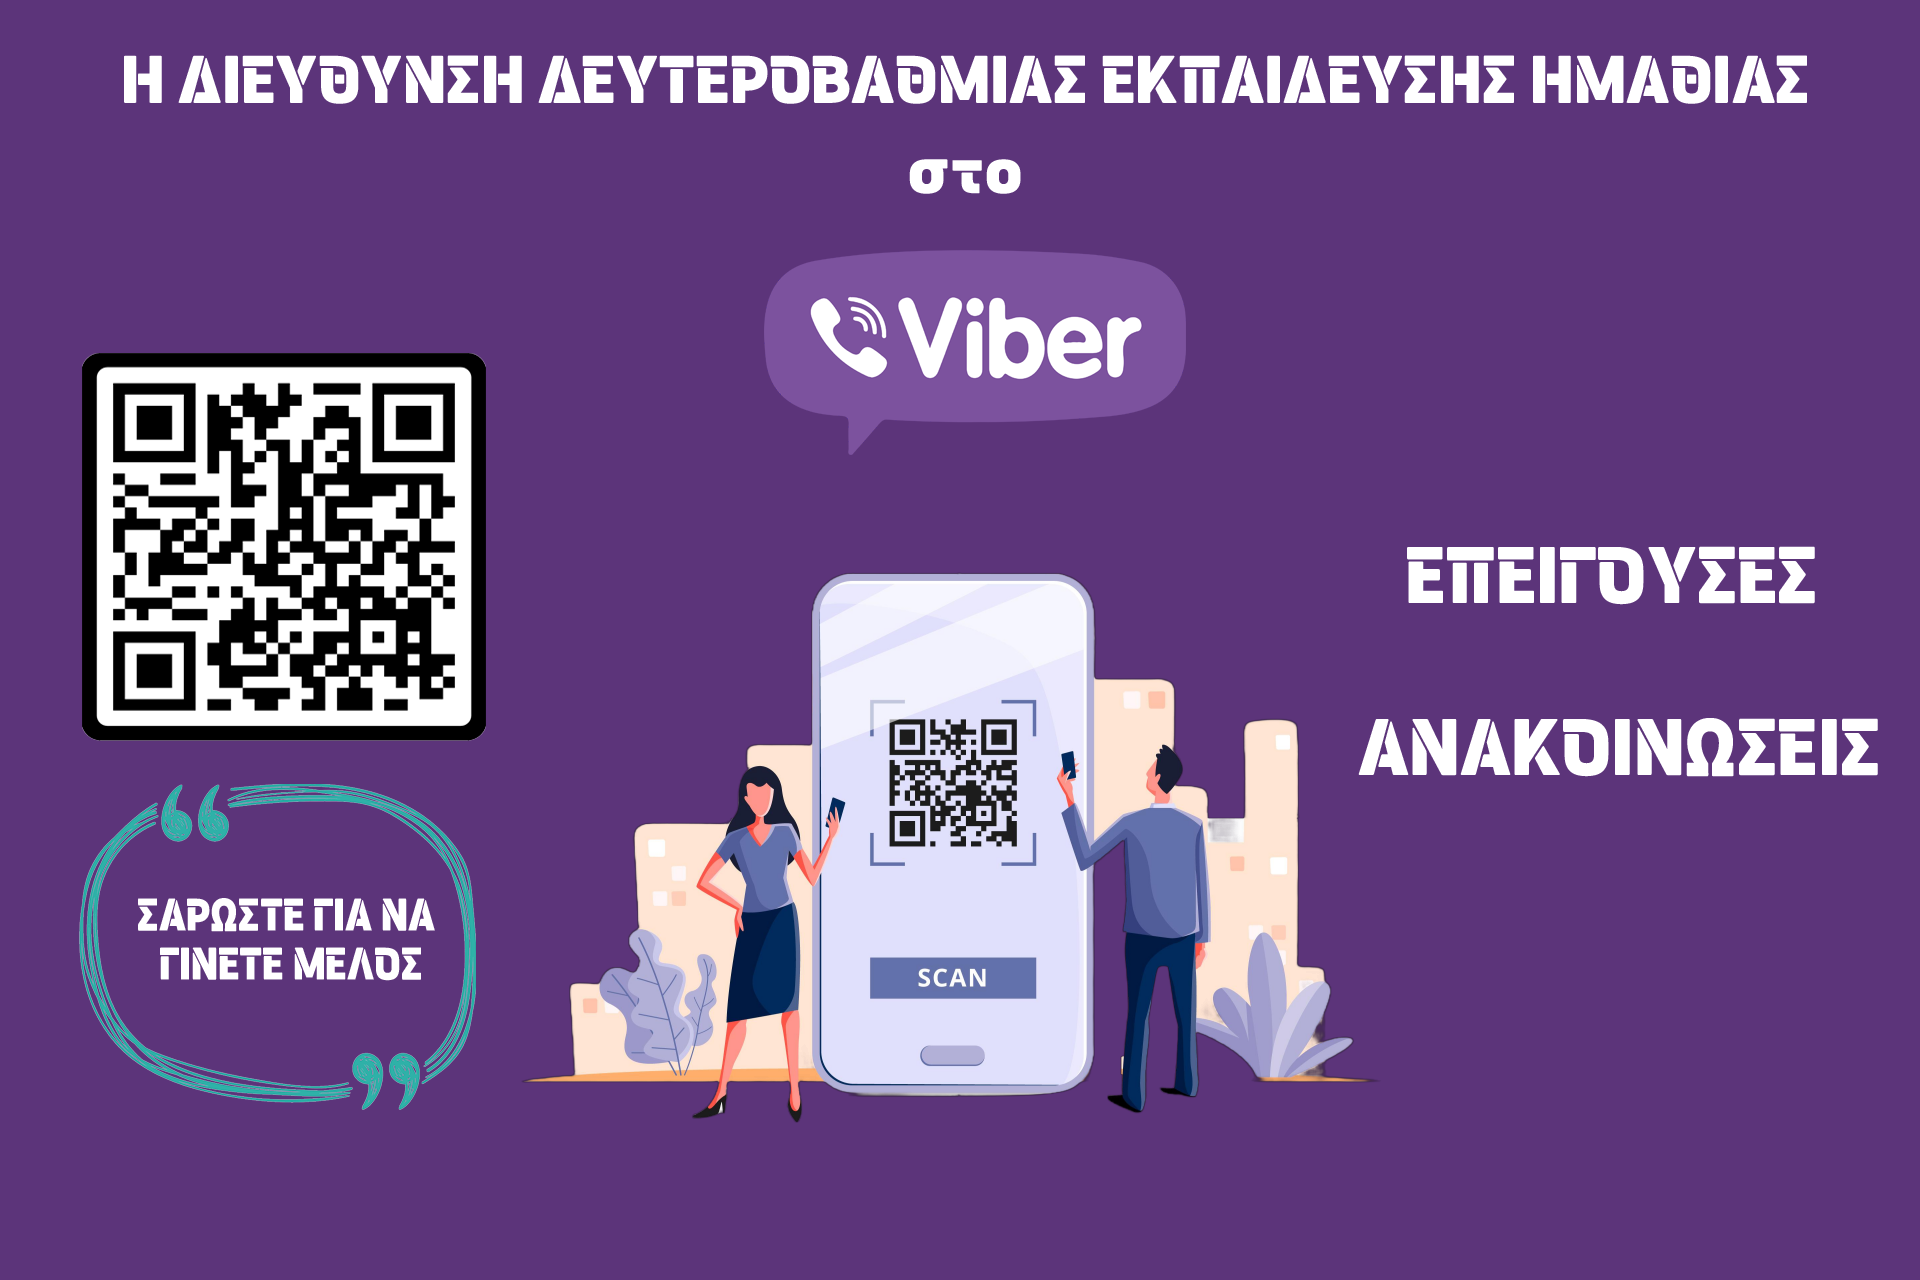 Έναρξη λειτουργίας επίσημου καναλιού της Δ.Δ.Ε. Ημαθίας στο Viber